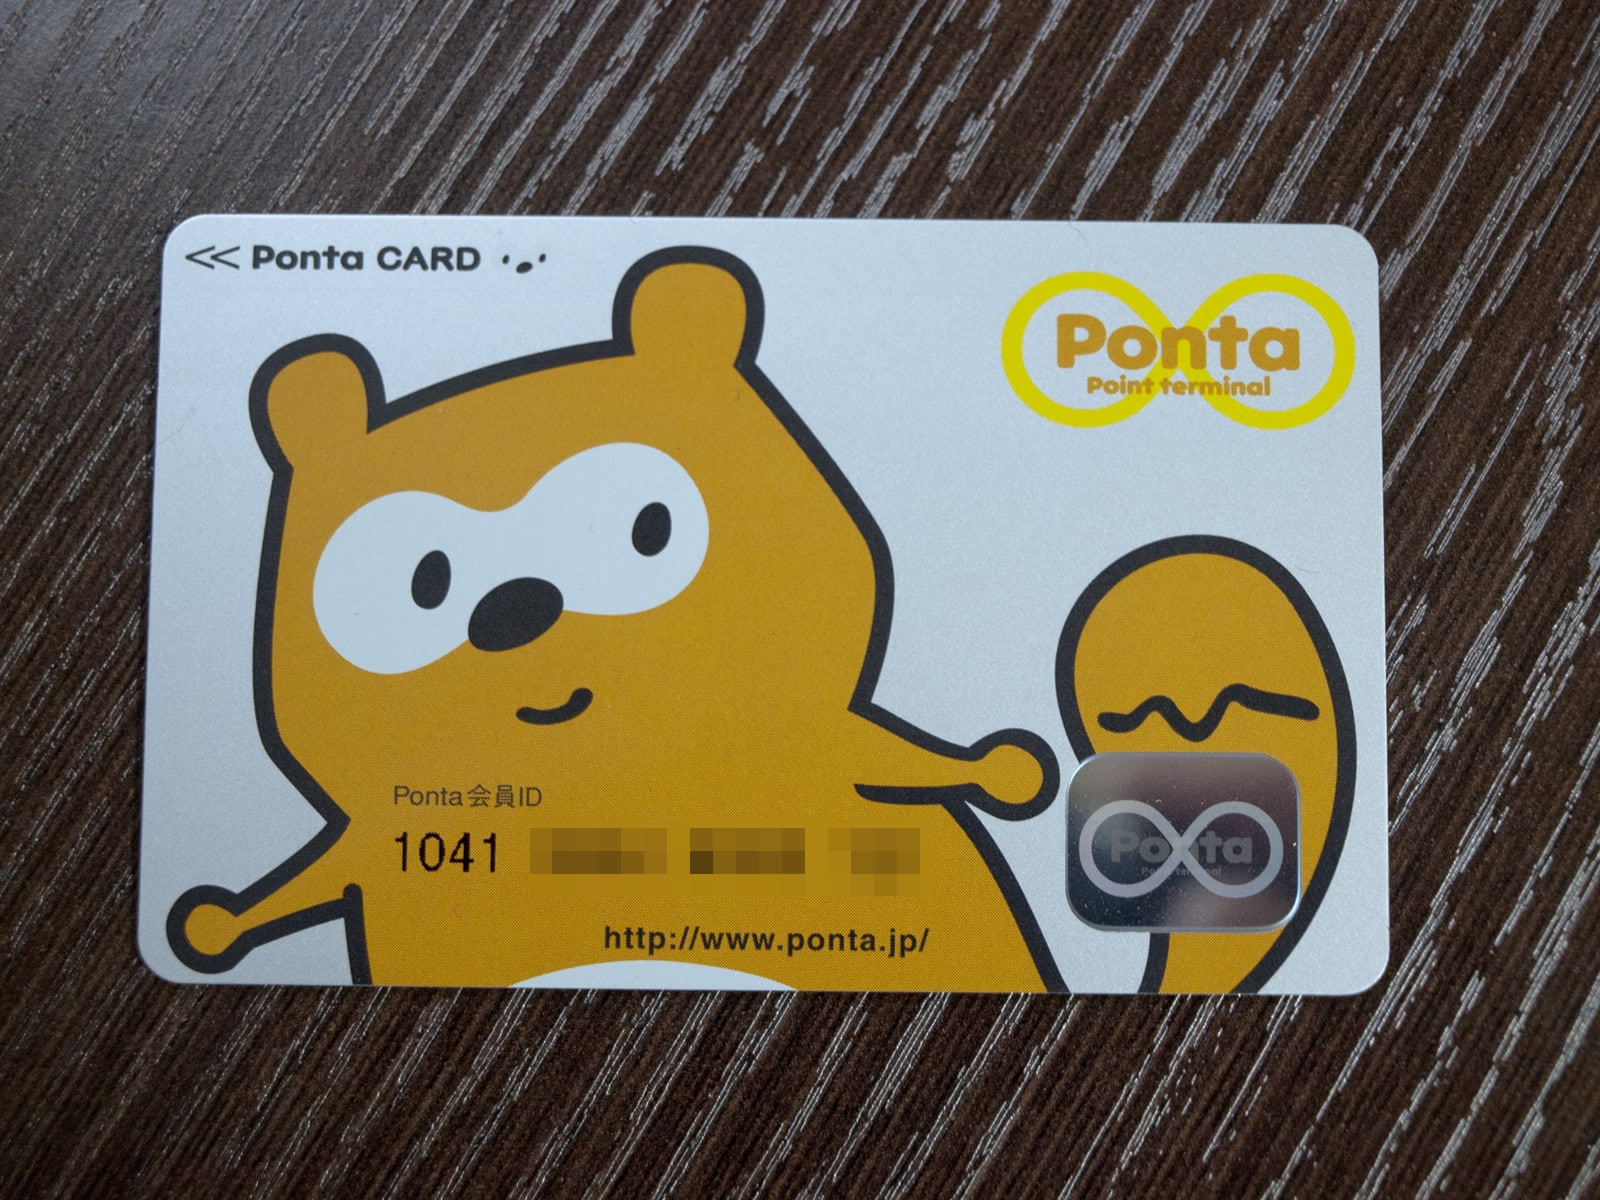  Ponta-card